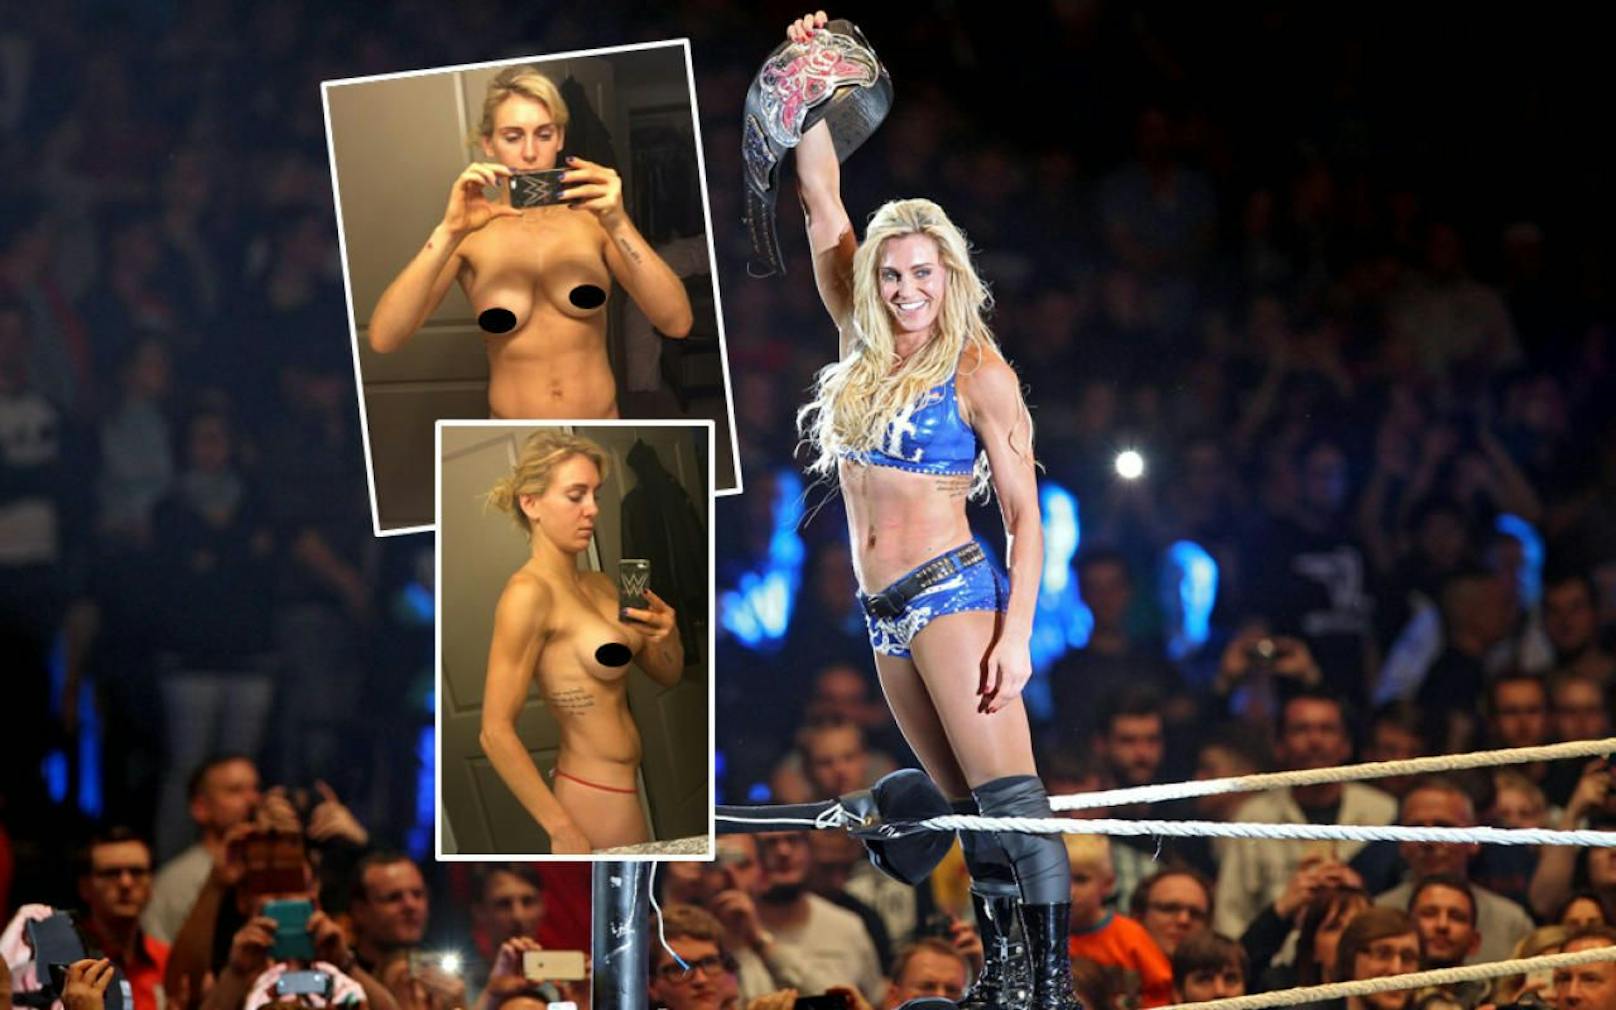 Nacktfotos von WWE-Star Charlotte sind im Internet aufgetaucht